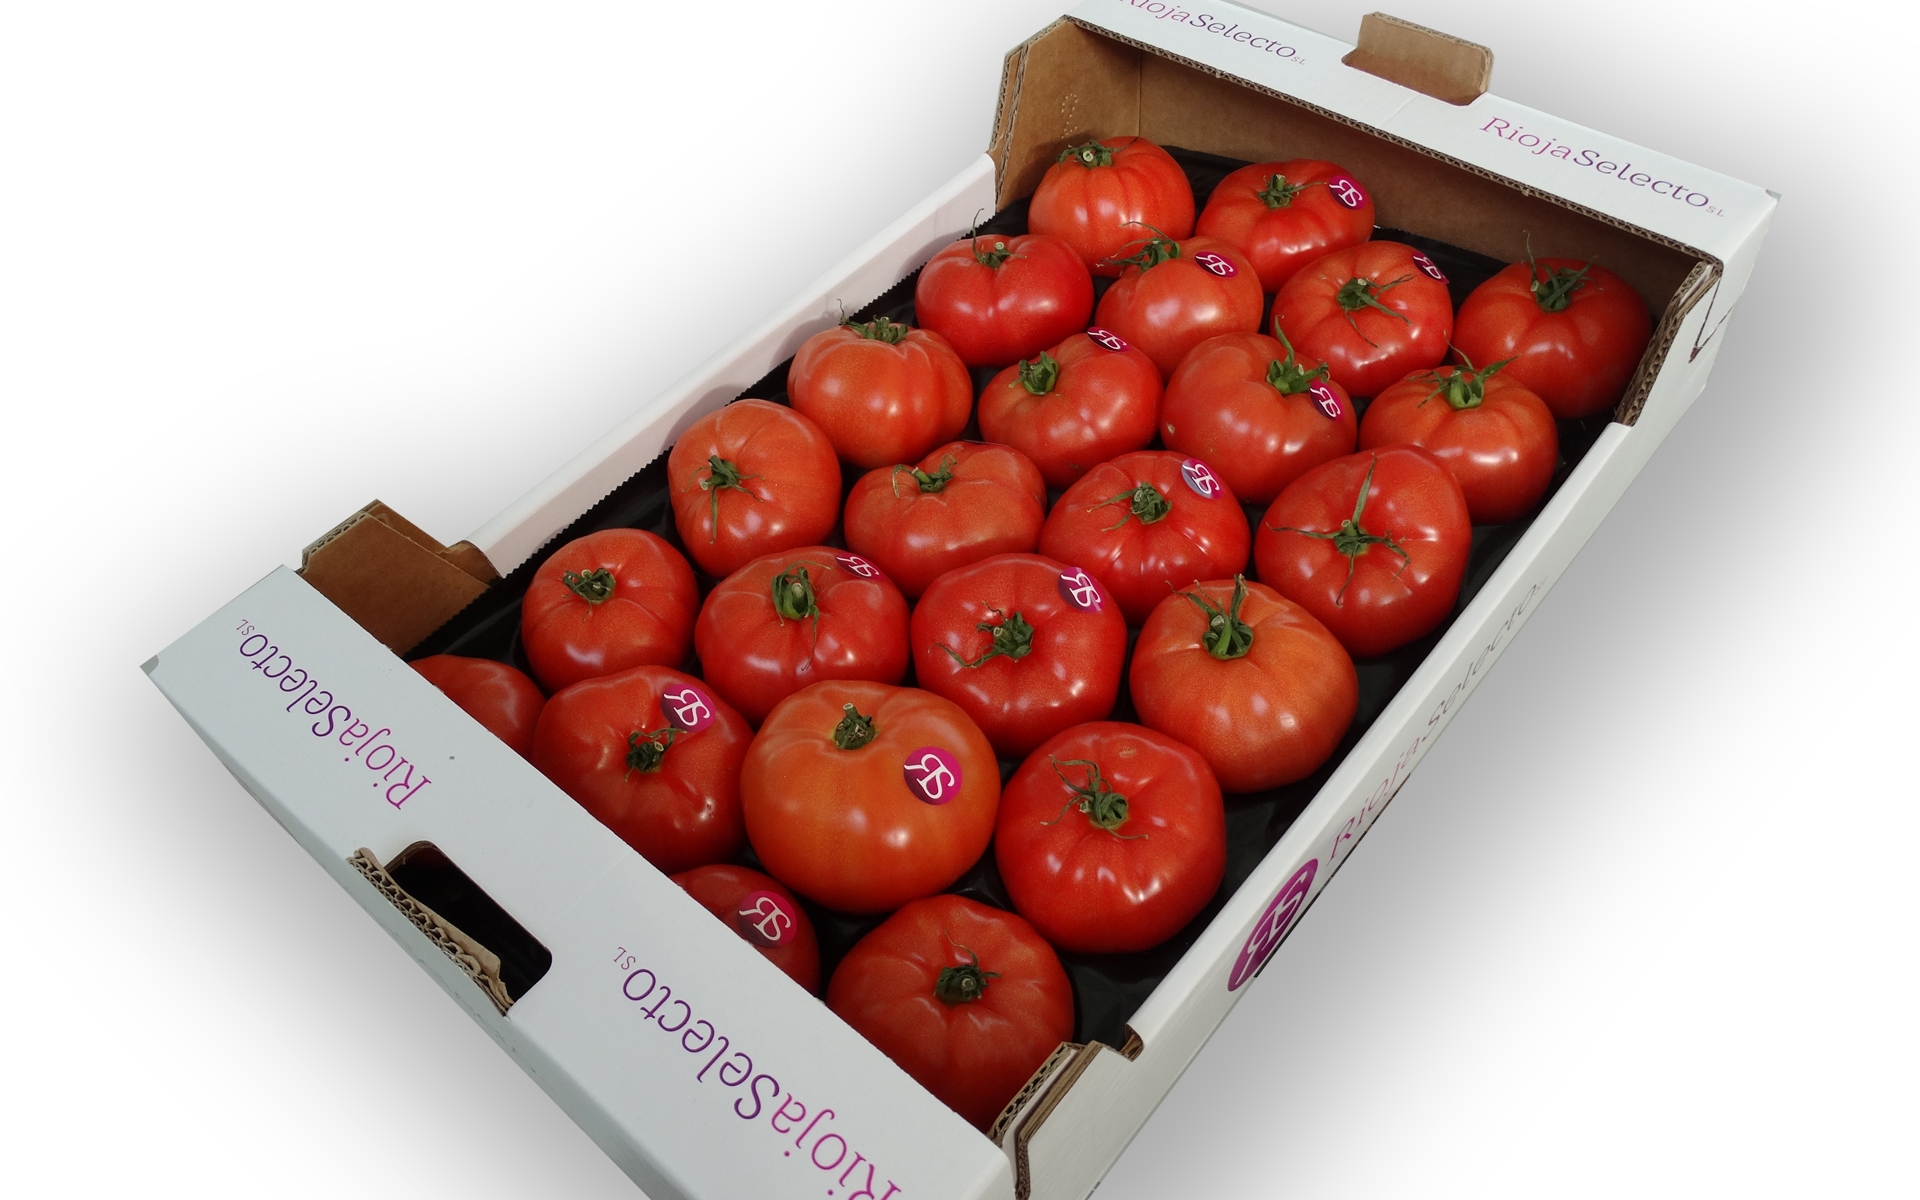 Ciego Ceniza Edredón Tomate de ensalada G caja 3,5Kg. Envío Gratis | RiojaSelecto